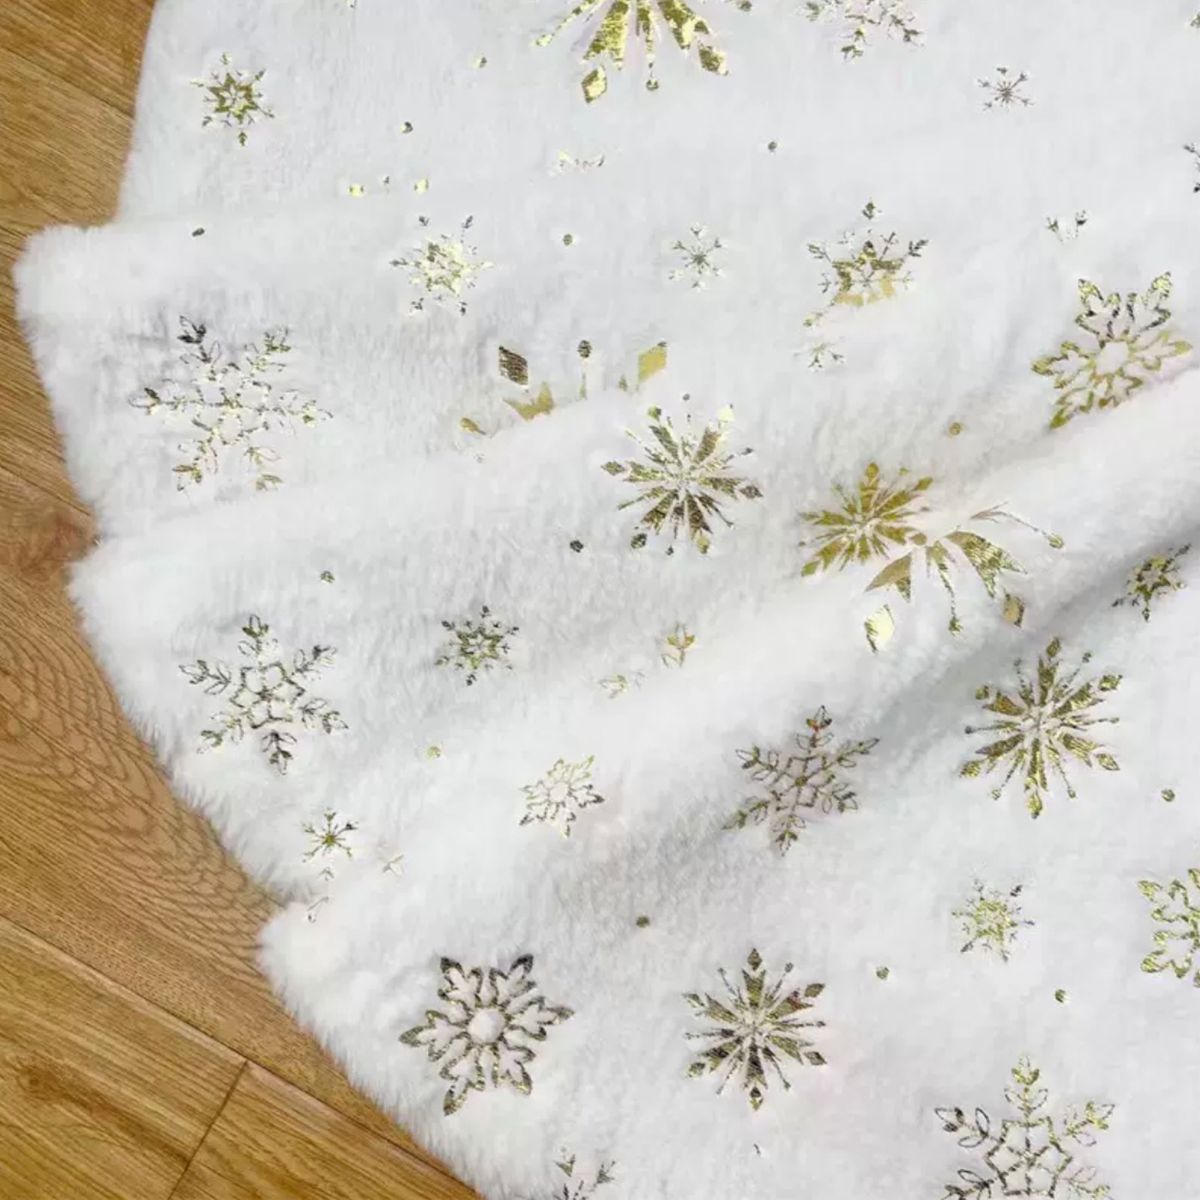 ツリースカート 78cm クリスマスツリー 足元隠し 装飾 ツリーマット ゴールド 金 白 プレゼント 雪 結晶 インテリア